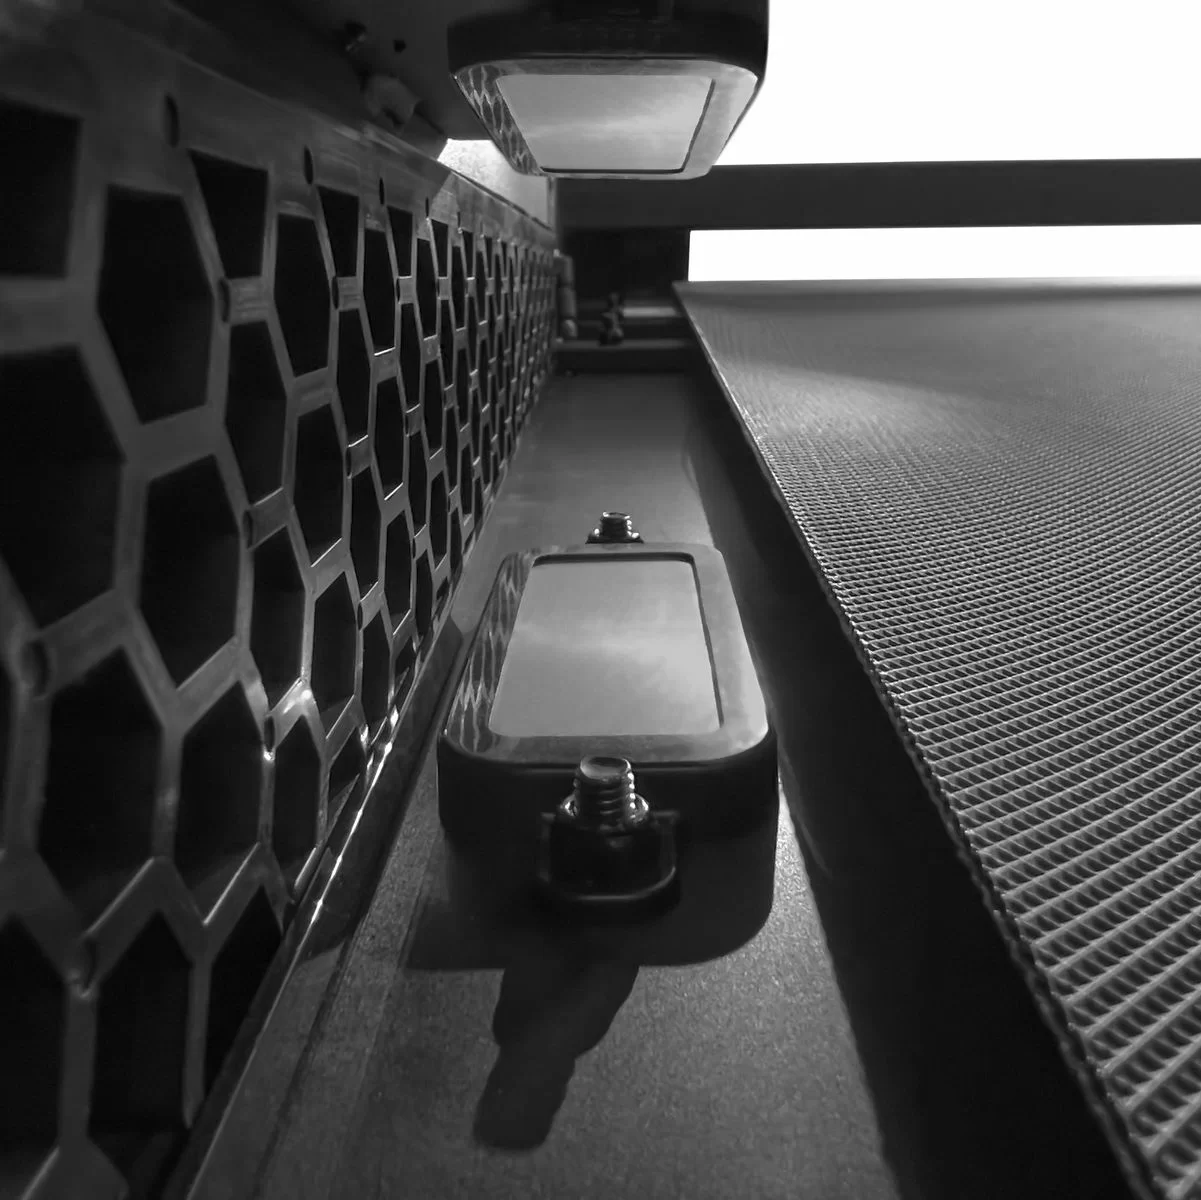 Реальное фото Беговая дорожка Titanium Masters Maglev M220 от магазина СпортСЕ